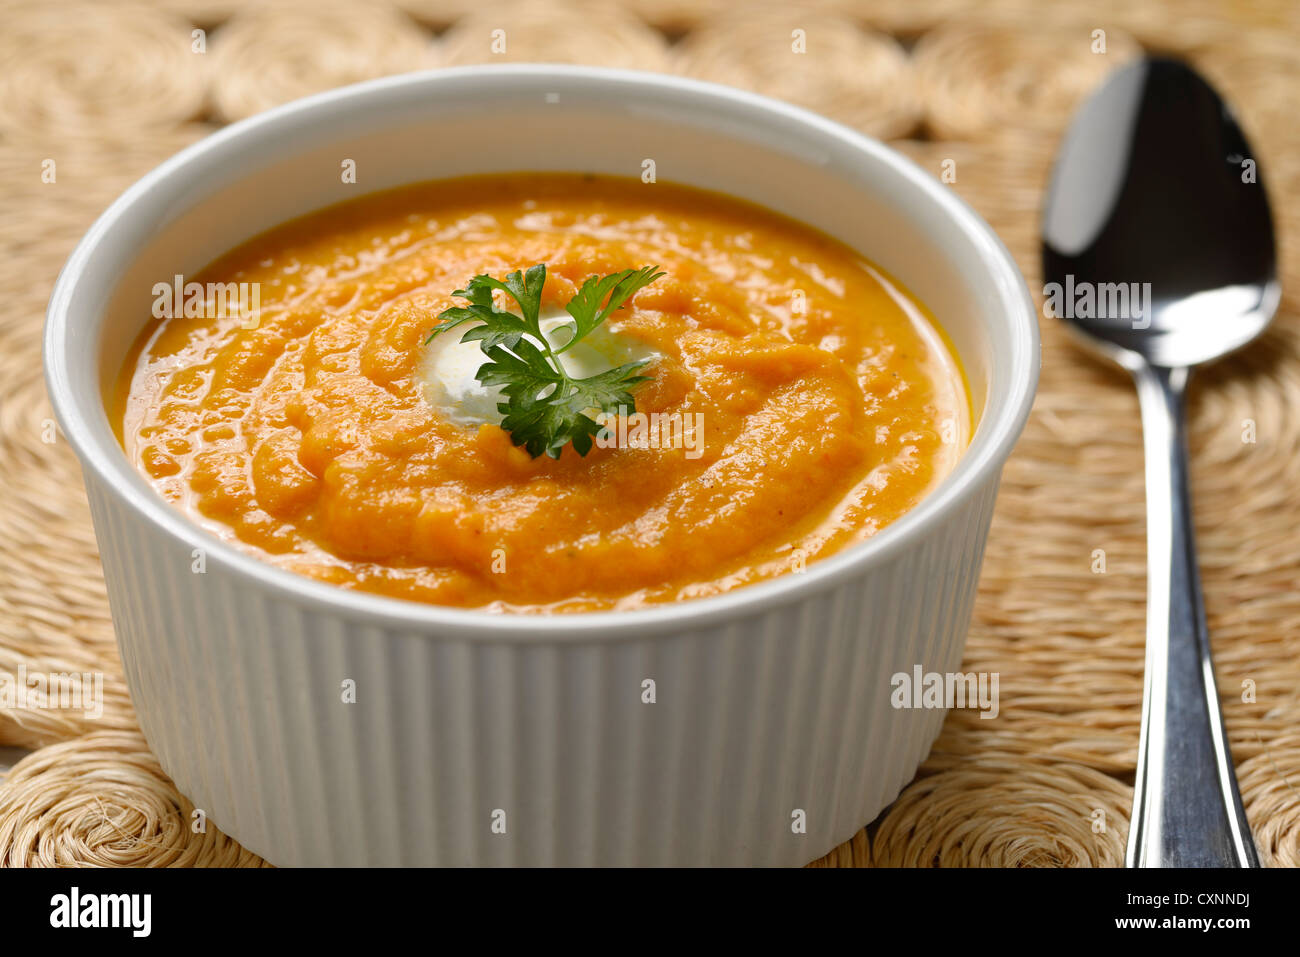 Zuppa di carote con la panna e il prezzemolo nel recipiente bianco su tessuto placemat di erba e cucchiaio Foto Stock